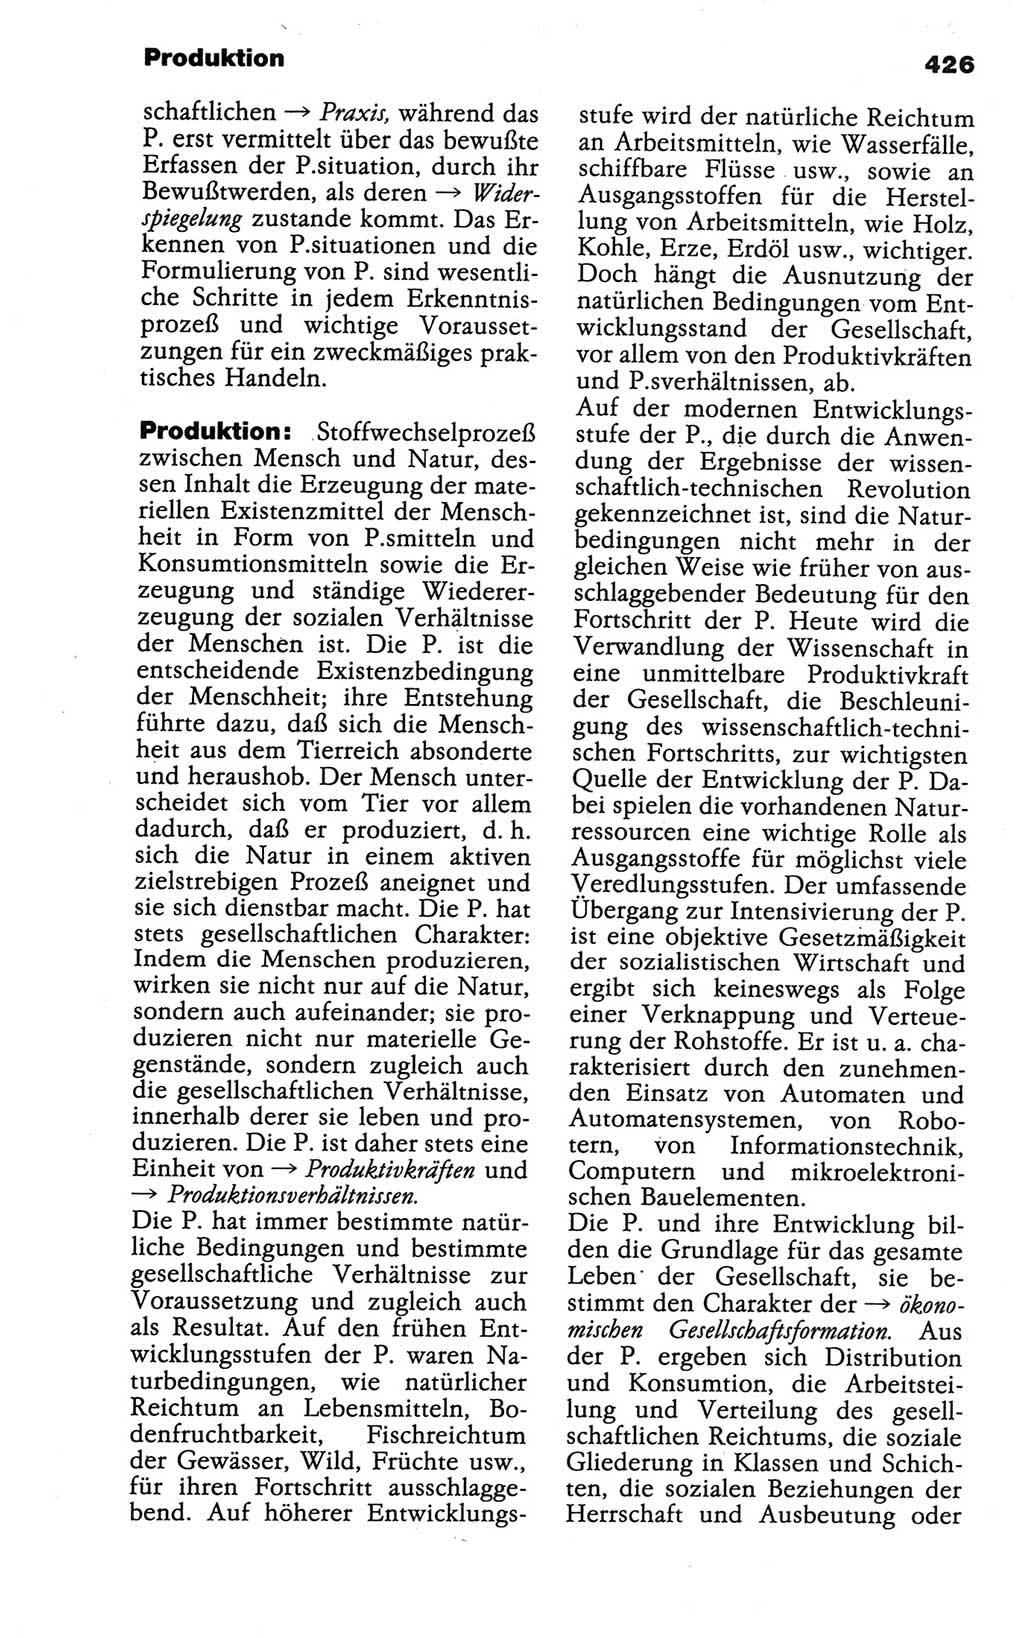 Wörterbuch der marxistisch-leninistischen Philosophie [Deutsche Demokratische Republik (DDR)] 1986, Seite 426 (Wb. ML Phil. DDR 1986, S. 426)